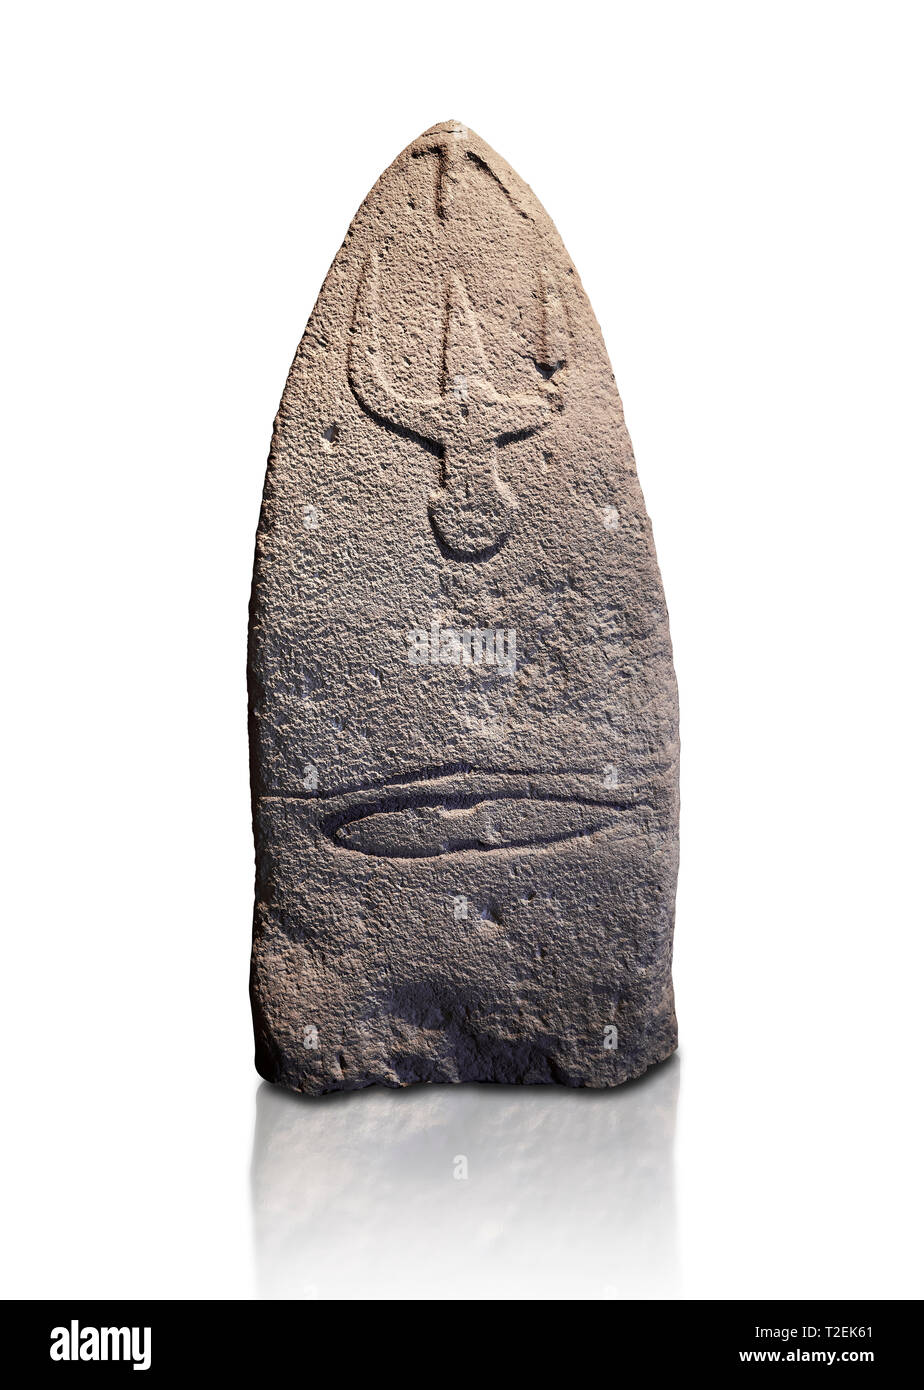 Ende der Europäischen Jungsteinzeit prähistorischen Menhir Standing Stone mit Schnitzereien auf seinem Gesicht. Die Darstellung eines stylalised männliche Figur beginnt an der Stockfoto